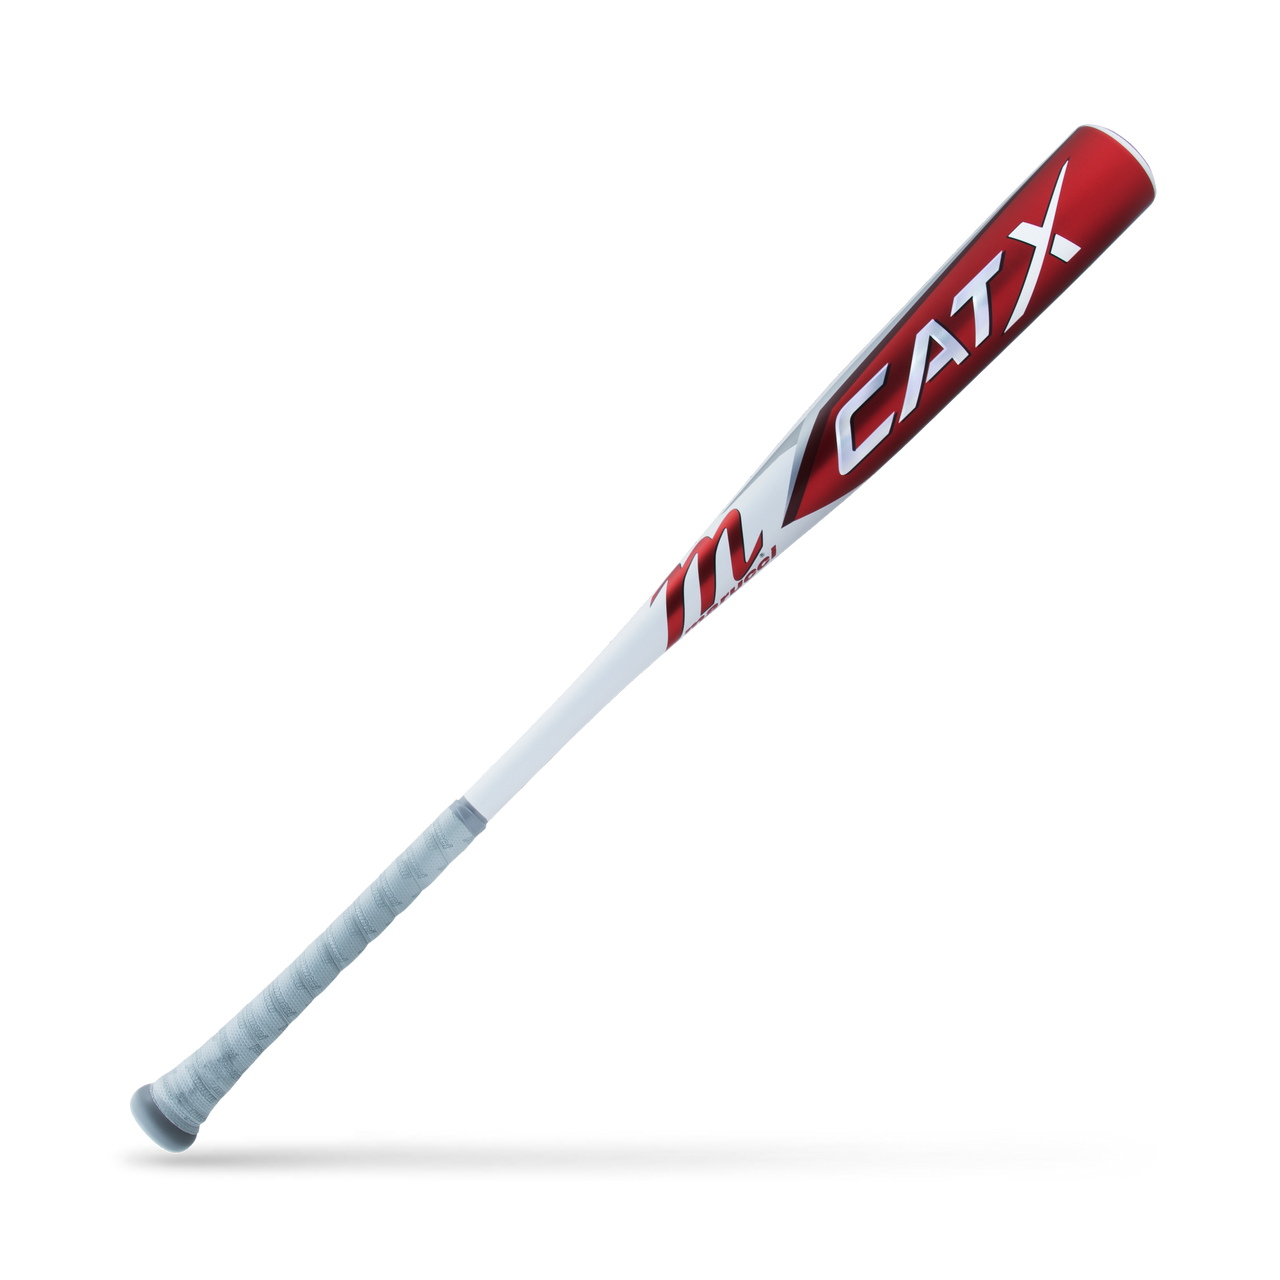 Marucci CATX (-3) BBCOR Baseball Bat